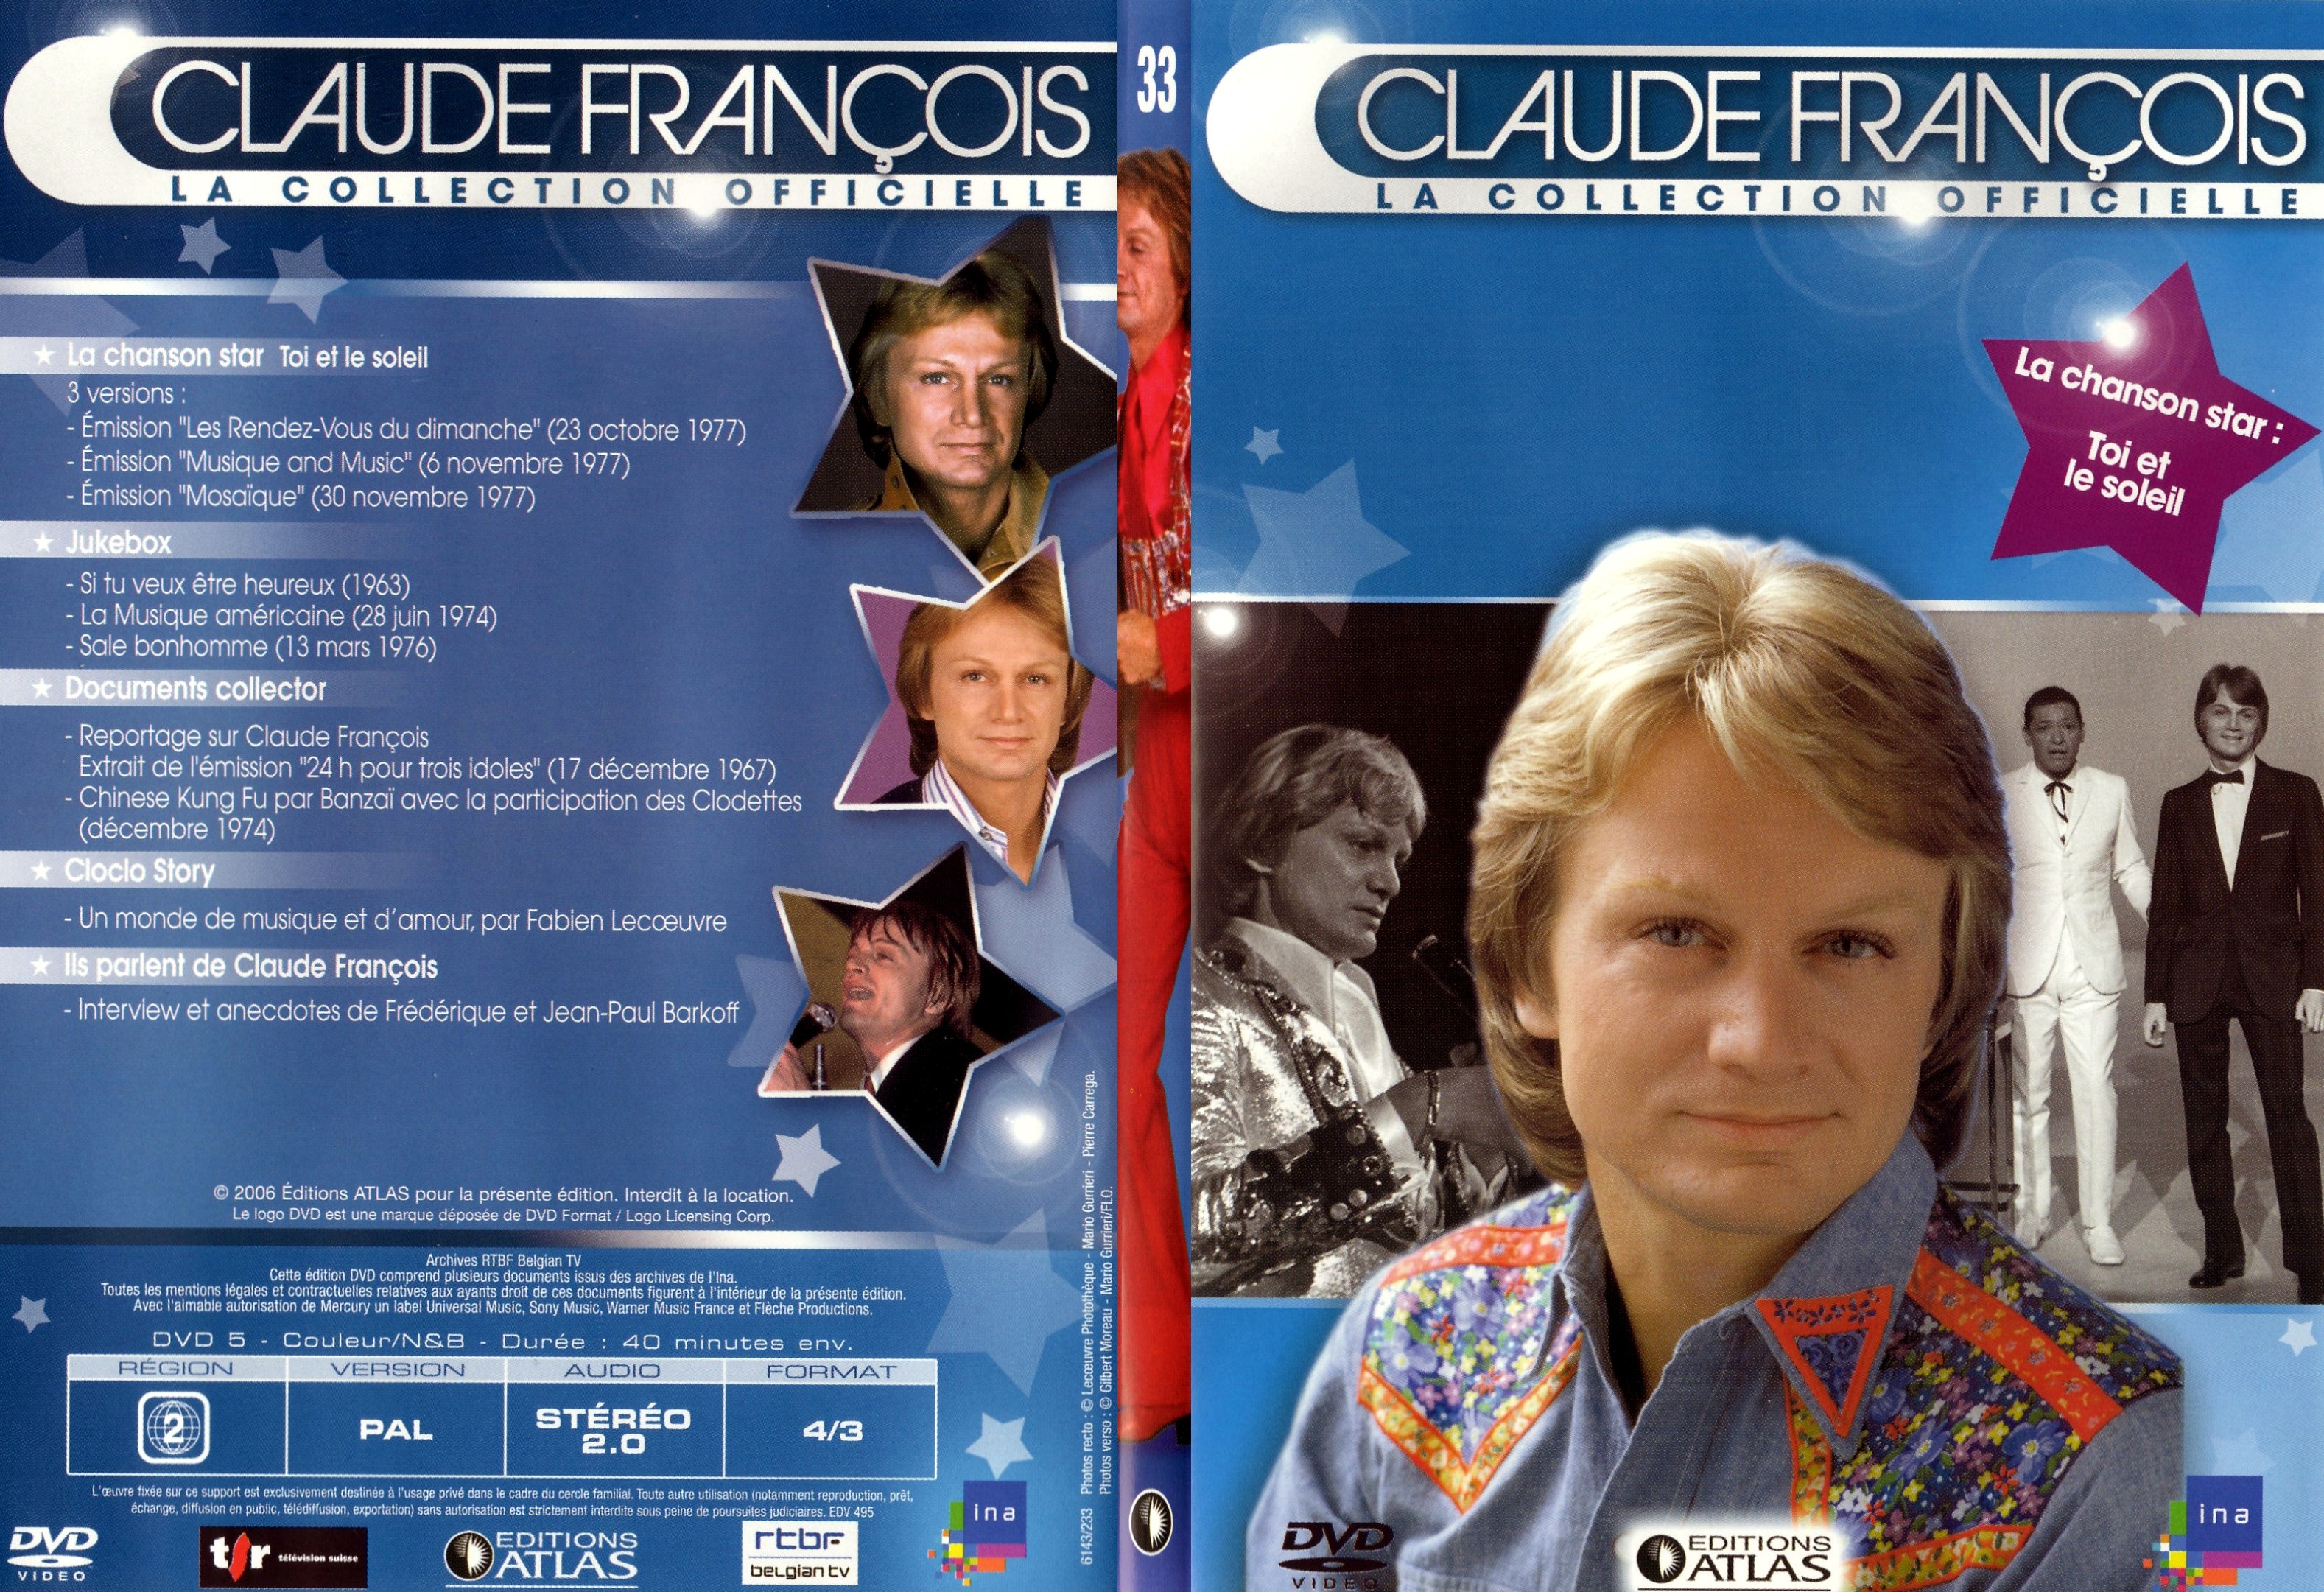 Jaquette DVD Claude francois le collection officielle vol 33 - SLIM